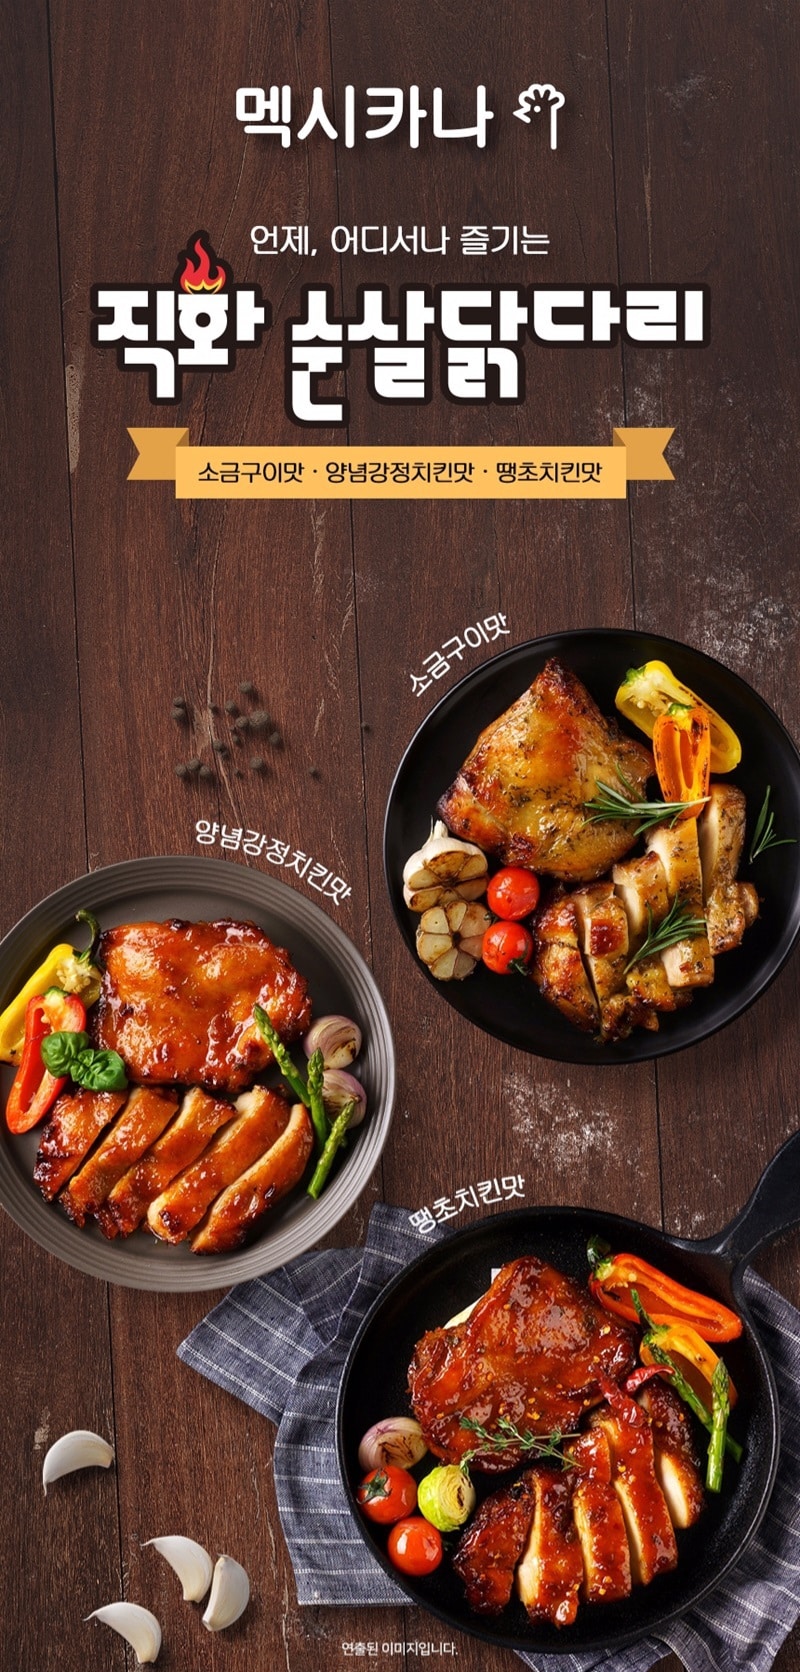 韓國食品-[멕시카나] 직화순살 닭다리(양념강정치킨맛) 170g